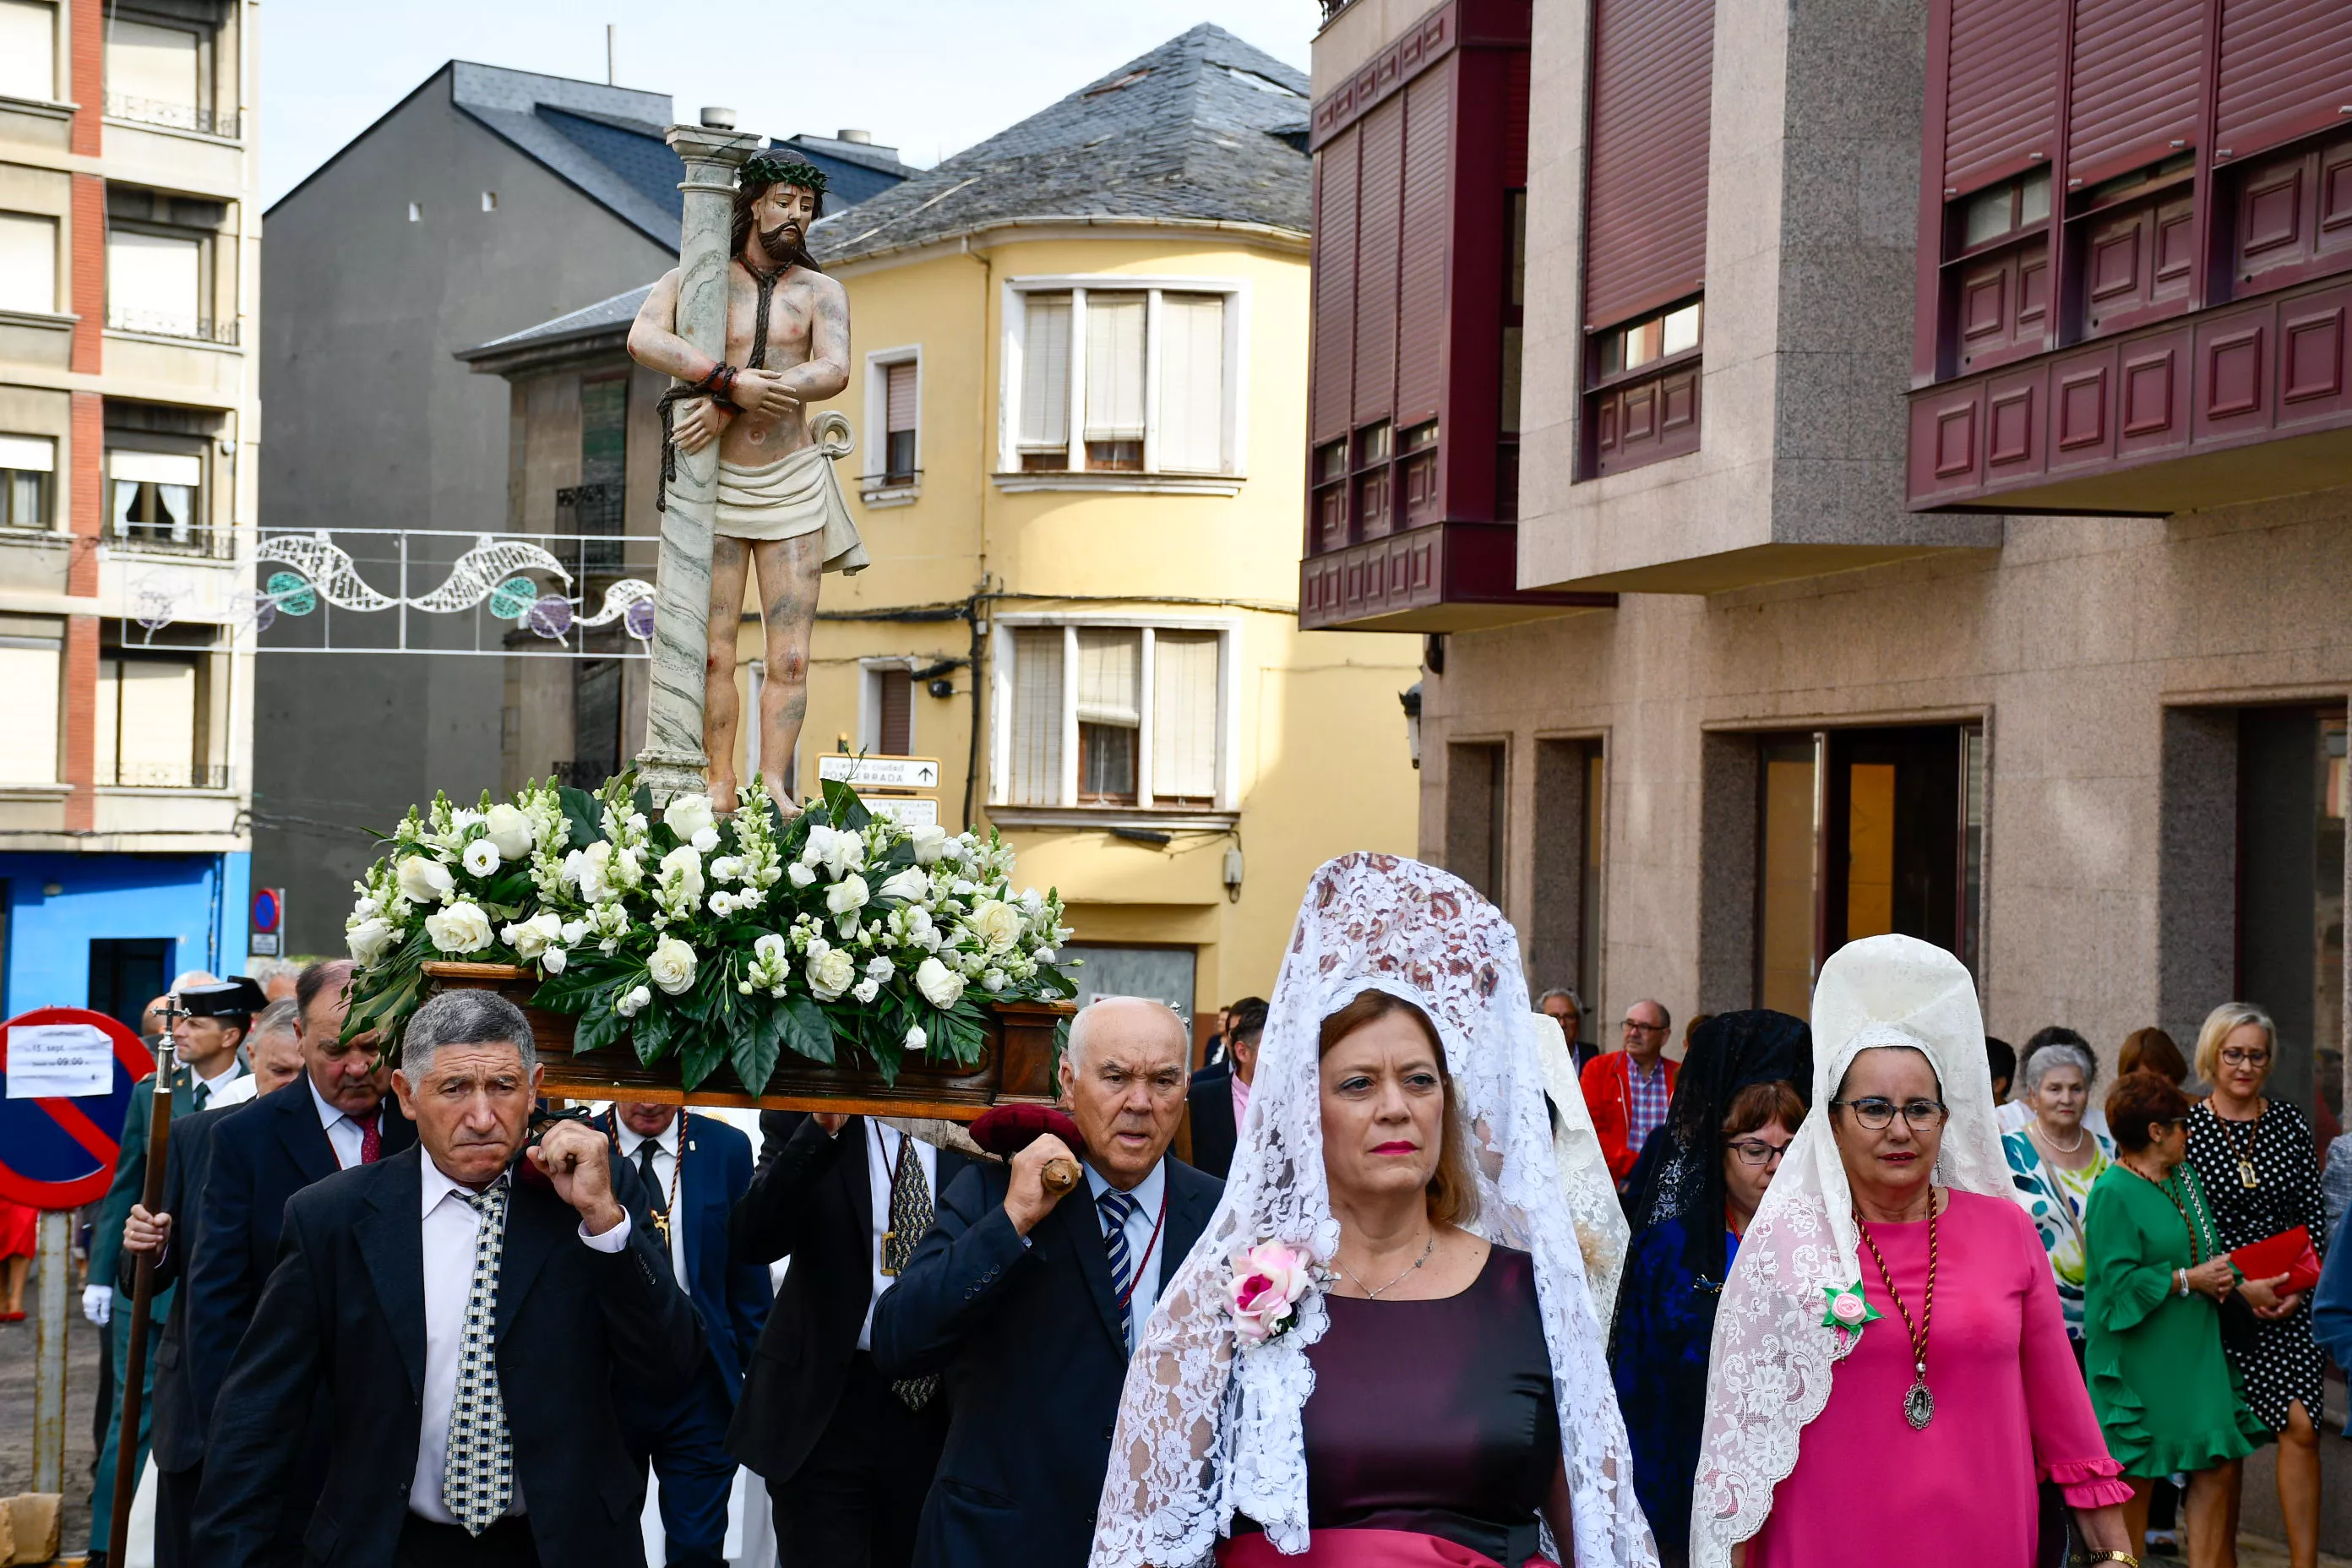  Tradicional procesión y comitiva de autoridades en el día del Cristín de Bembibre  (85)